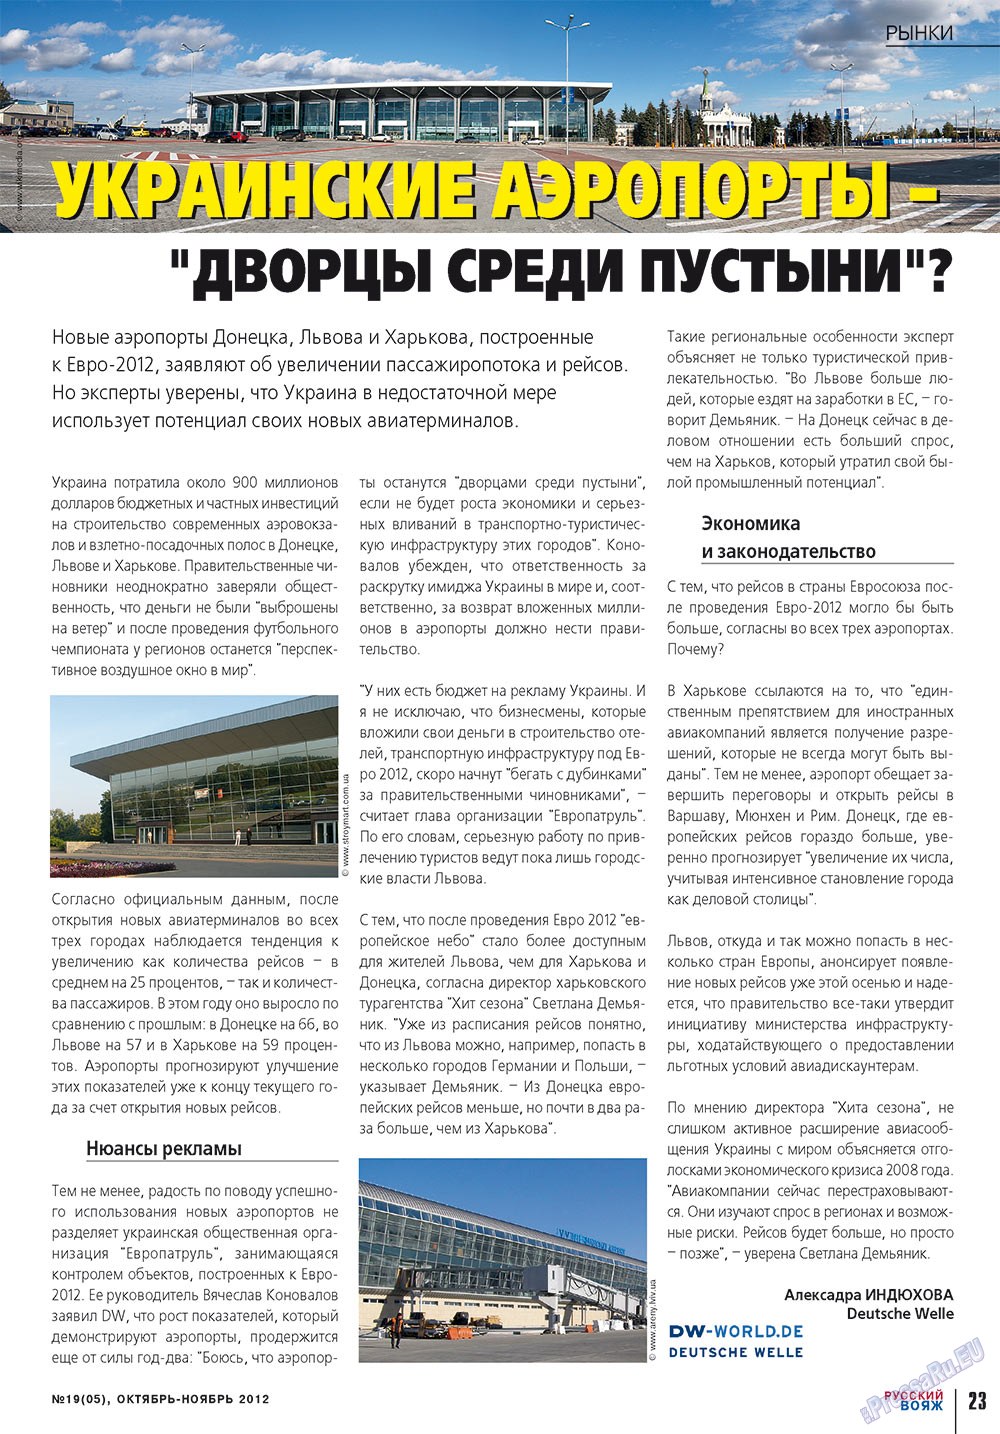 Русский вояж (журнал). 2012 год, номер 19, стр. 23